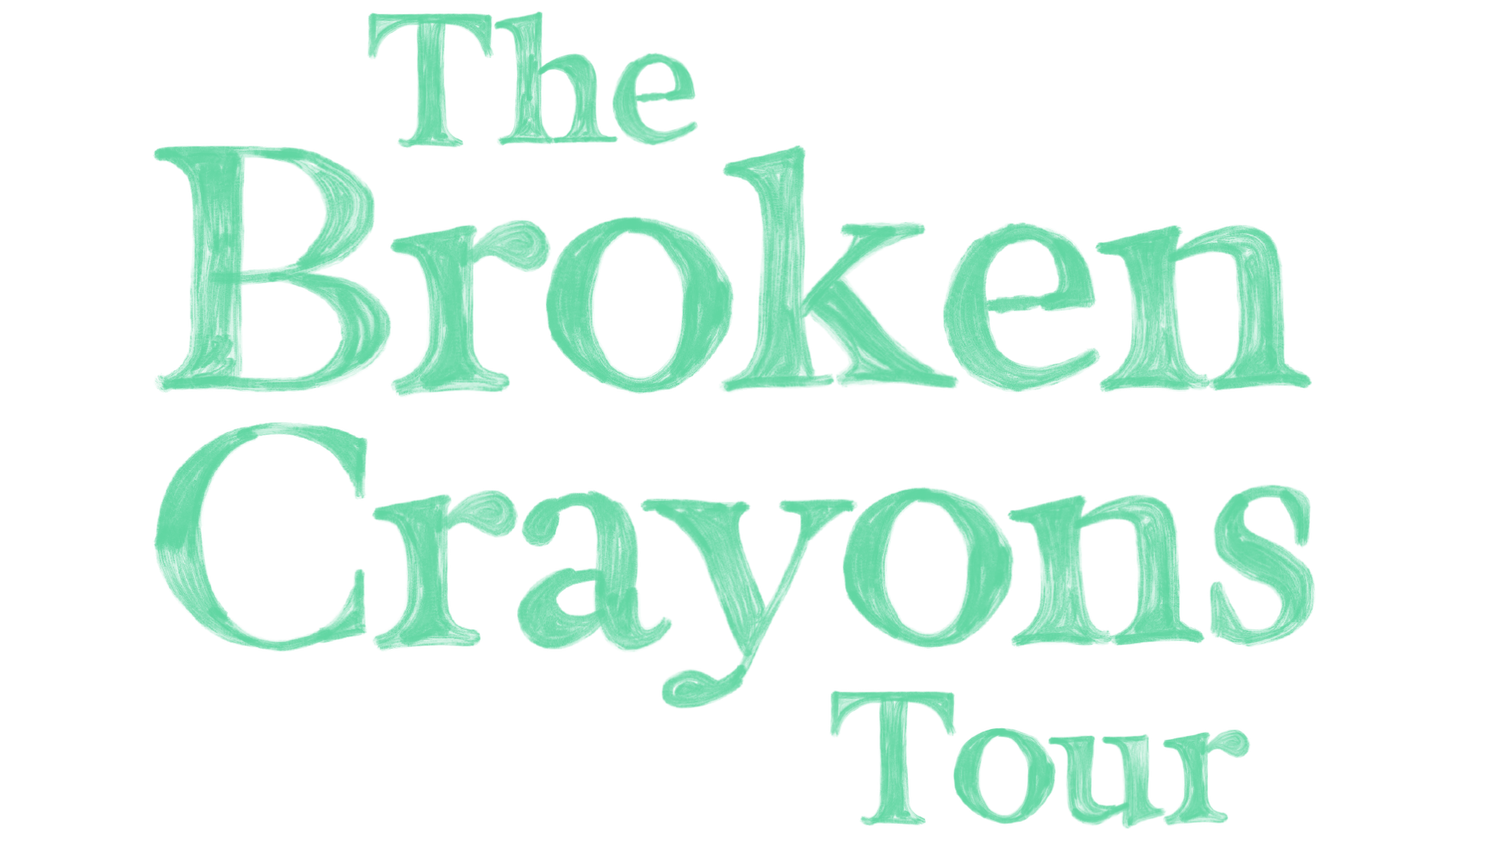 The Broken Crayons Tour